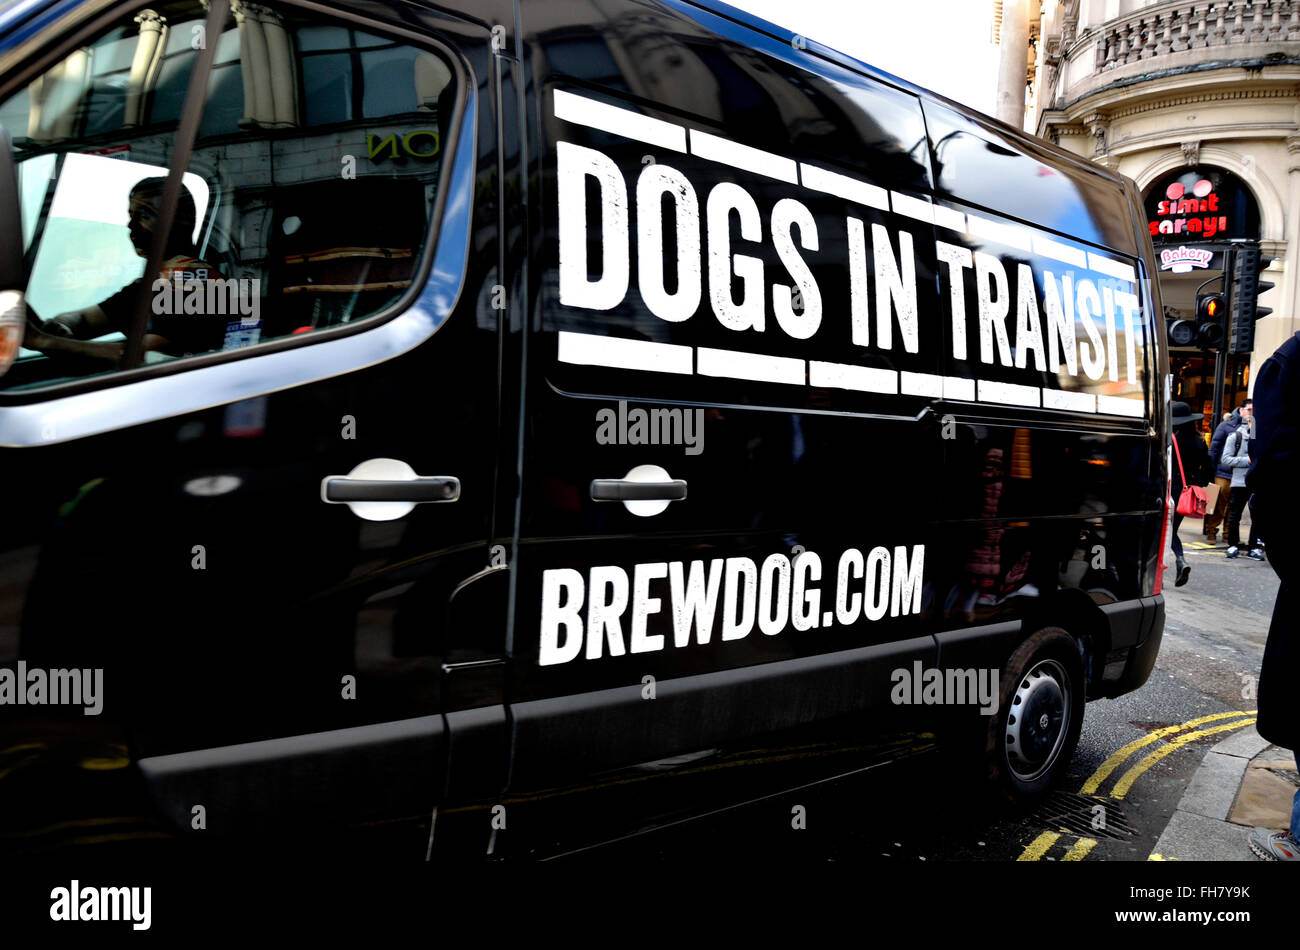 Londres, Angleterre, Royaume-Uni. 'Dogs en transit' - Brewdog.com van offrant la bière dans Piccadilly Circus Banque D'Images